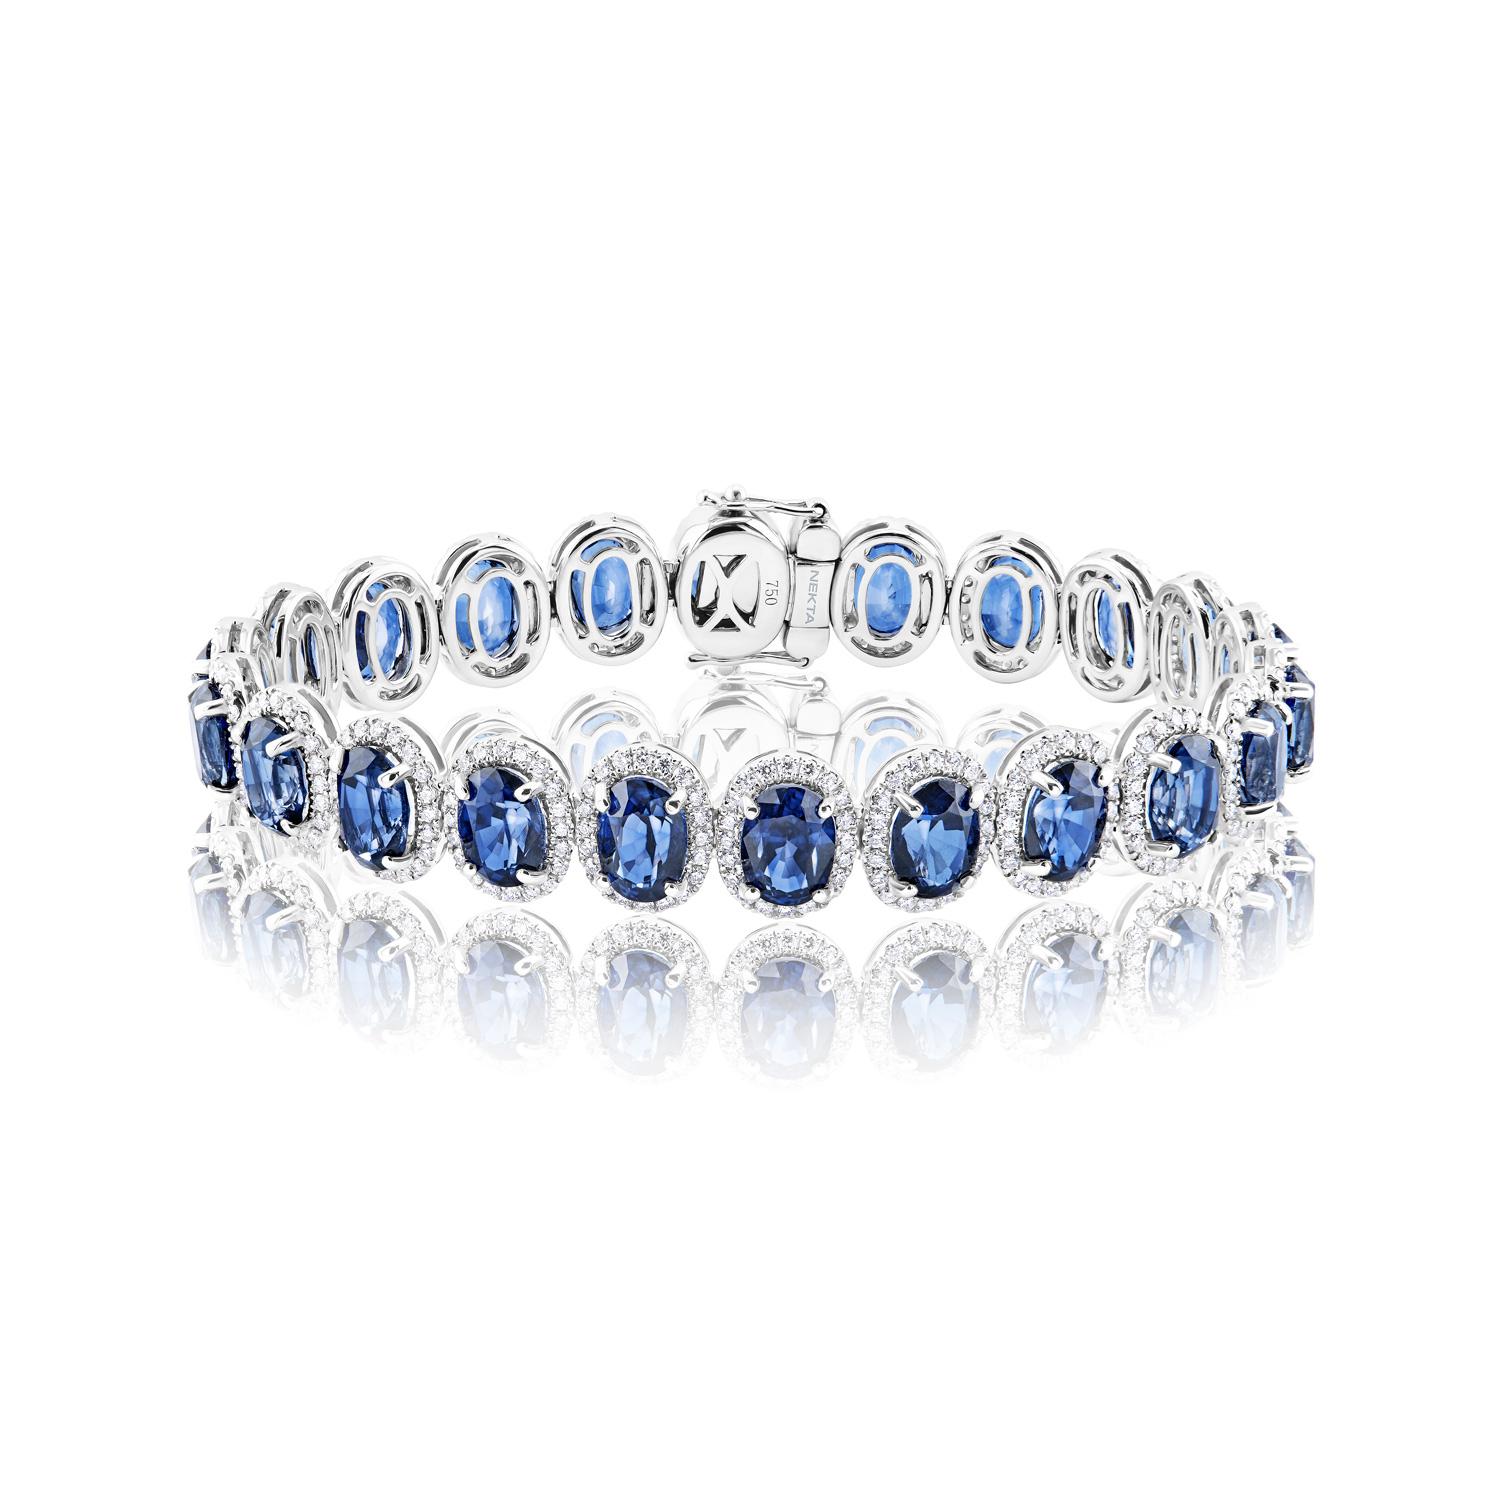 Le bracelet J'adore saphir à 26 carats de diamants présente des DIAMANTS Taillés en ovale d'un poids total d'environ 25,86 carats, sertis dans de l'or blanc 18 carats.

J'adore Saphir
Saphir Taille : 23.55 Carats
Forme du saphir : Coupe